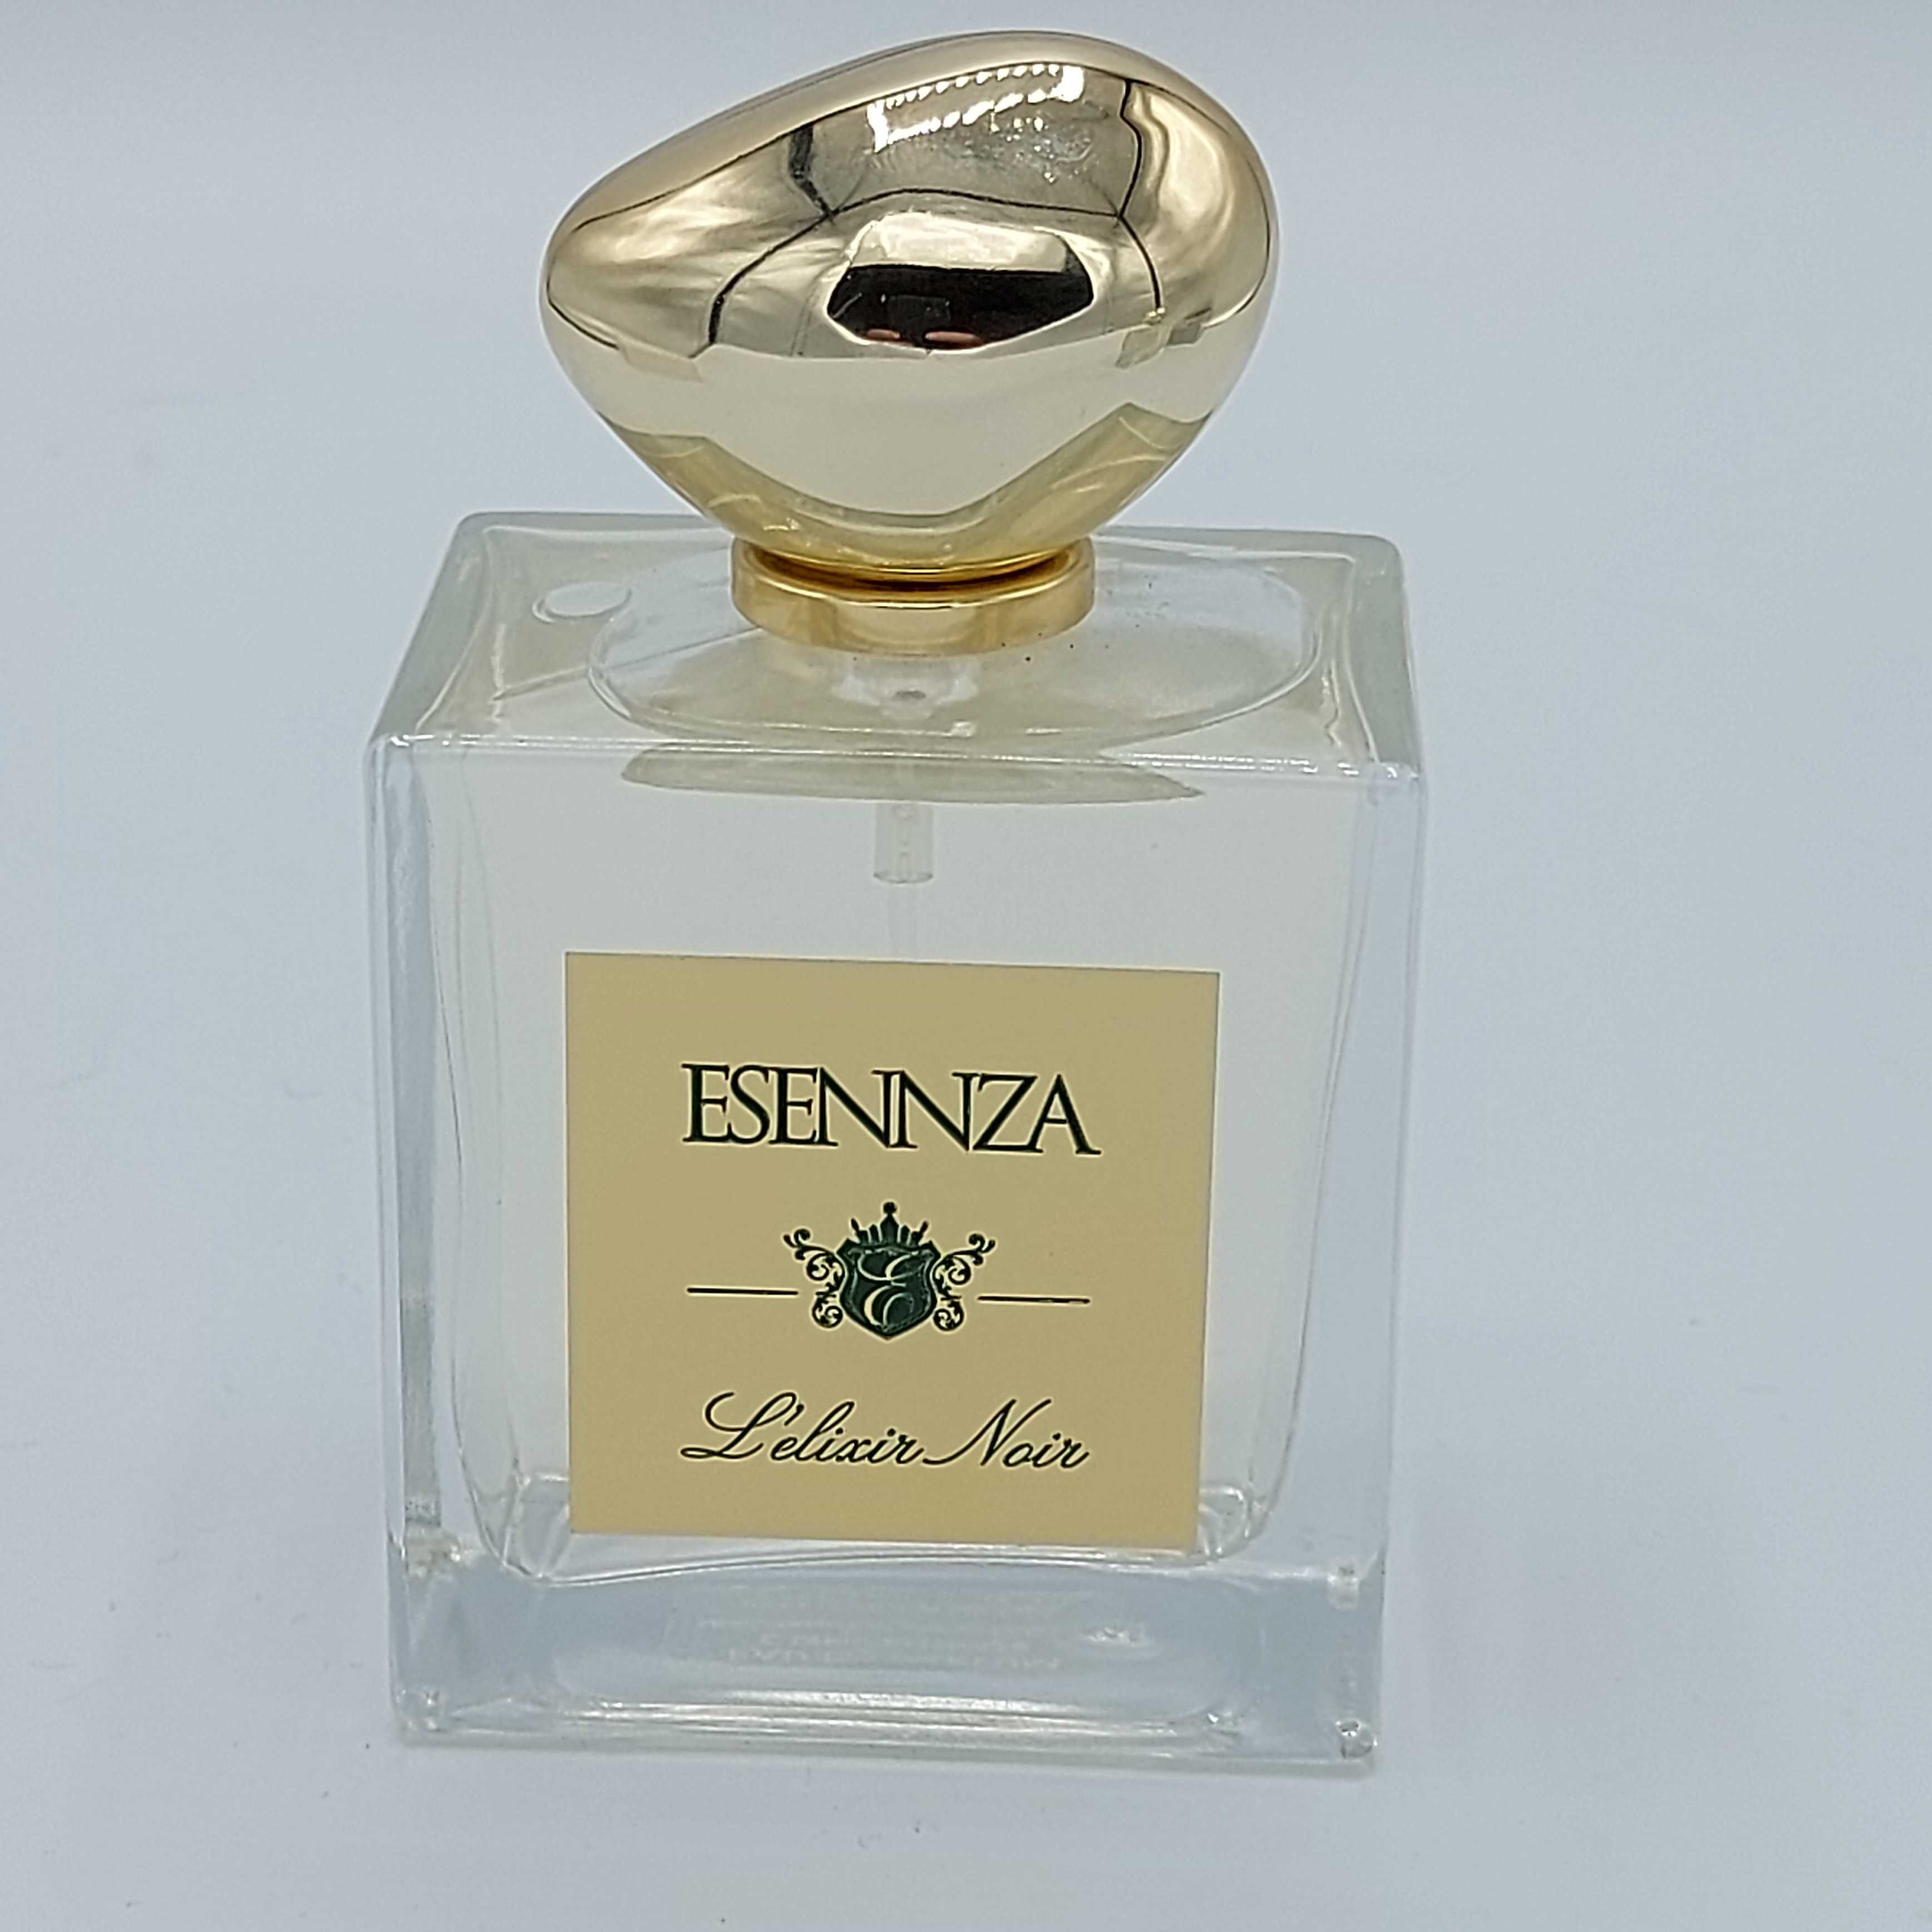 Esennza L'Elixir Noir Eau De Parfum concentate 100 ml spray unisex